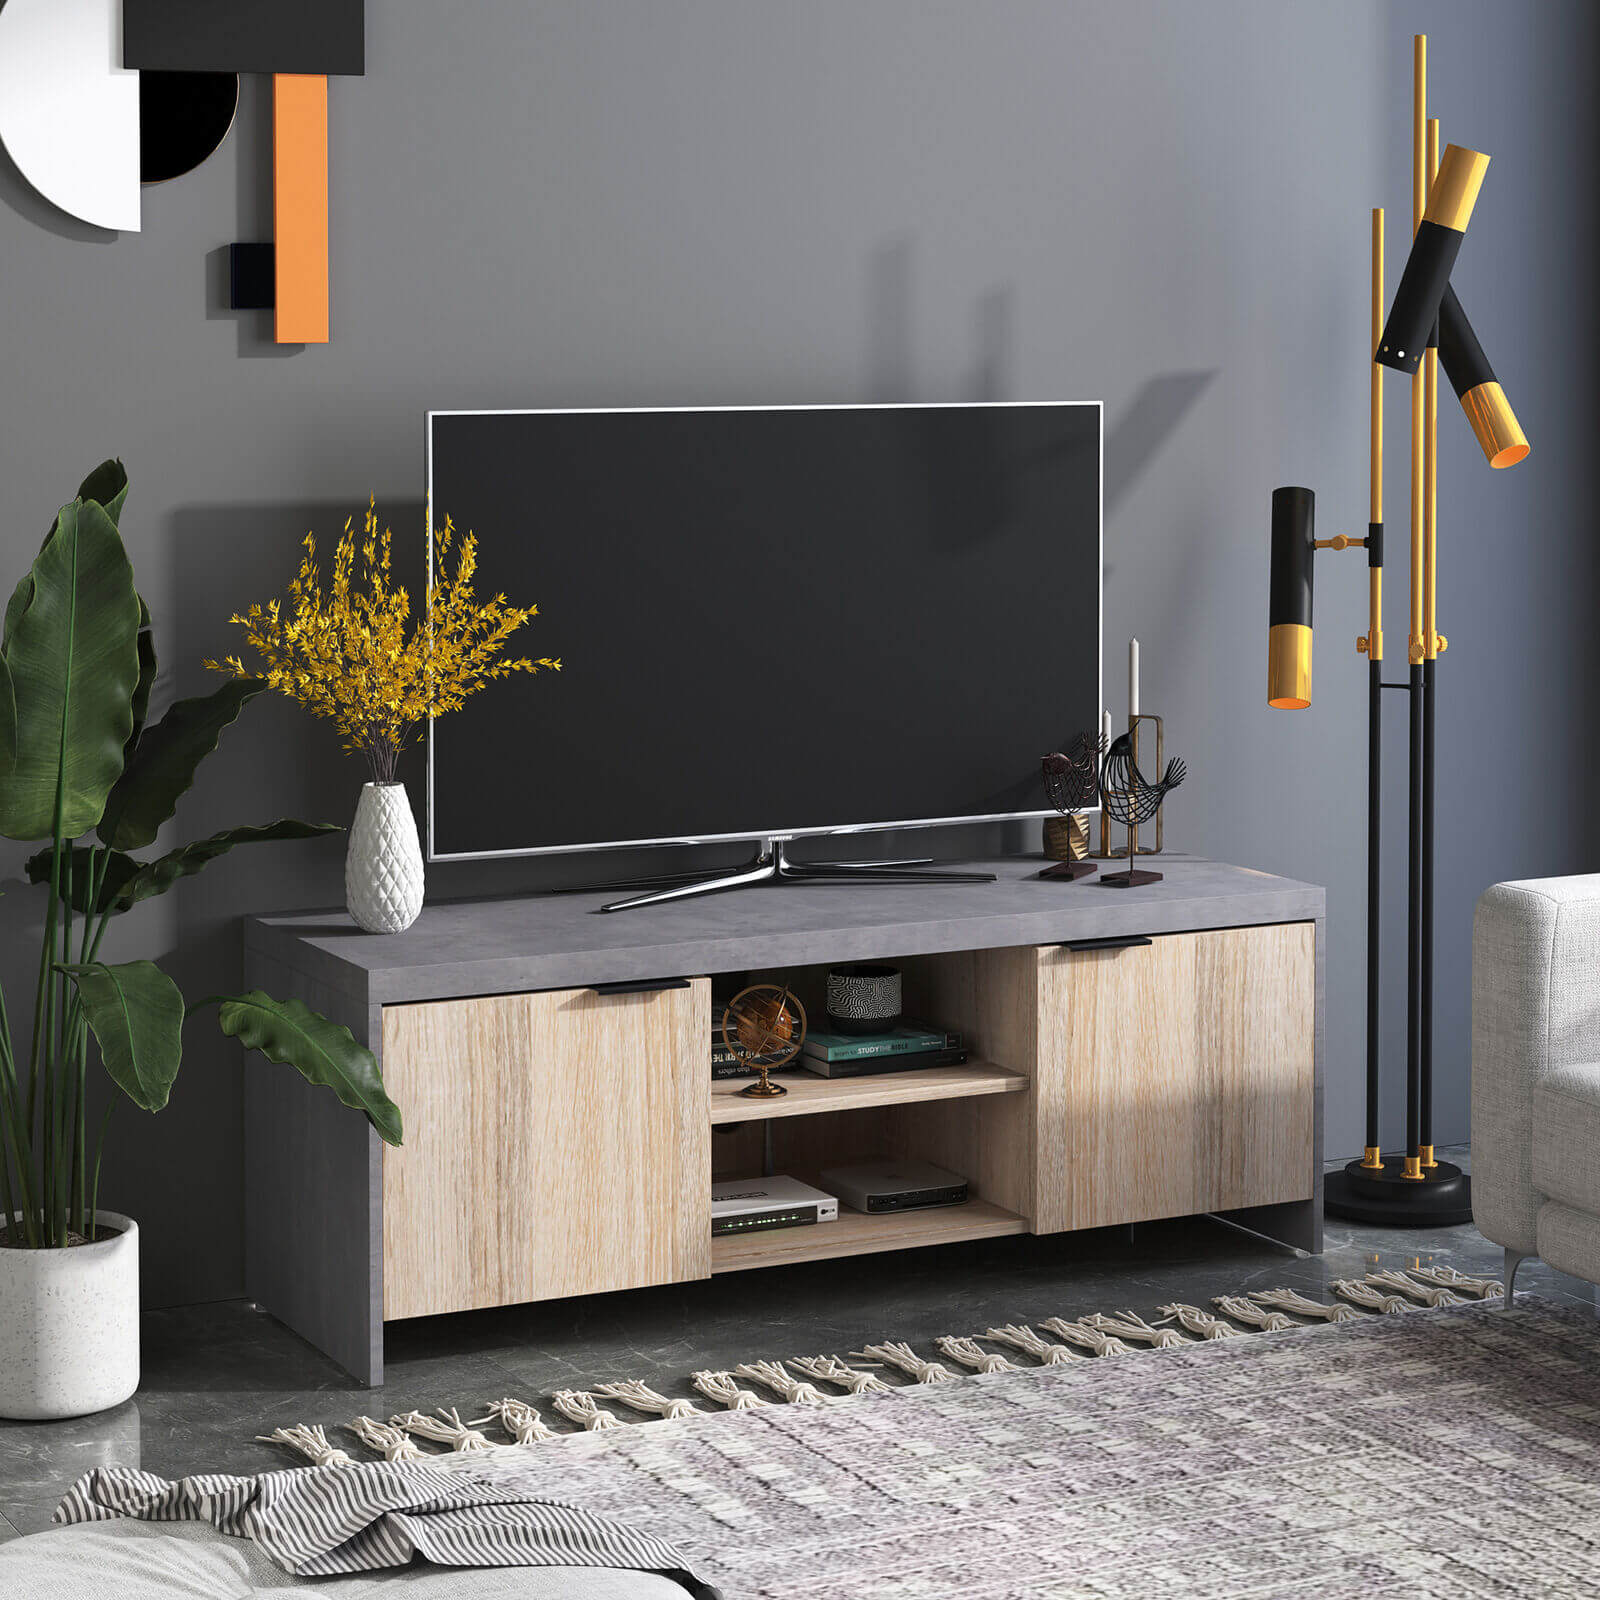 Khi chọn các mẫu kệ tivi phòng khách cho nhà chung cư thì nên lựa chọn những món đồ đơn giản